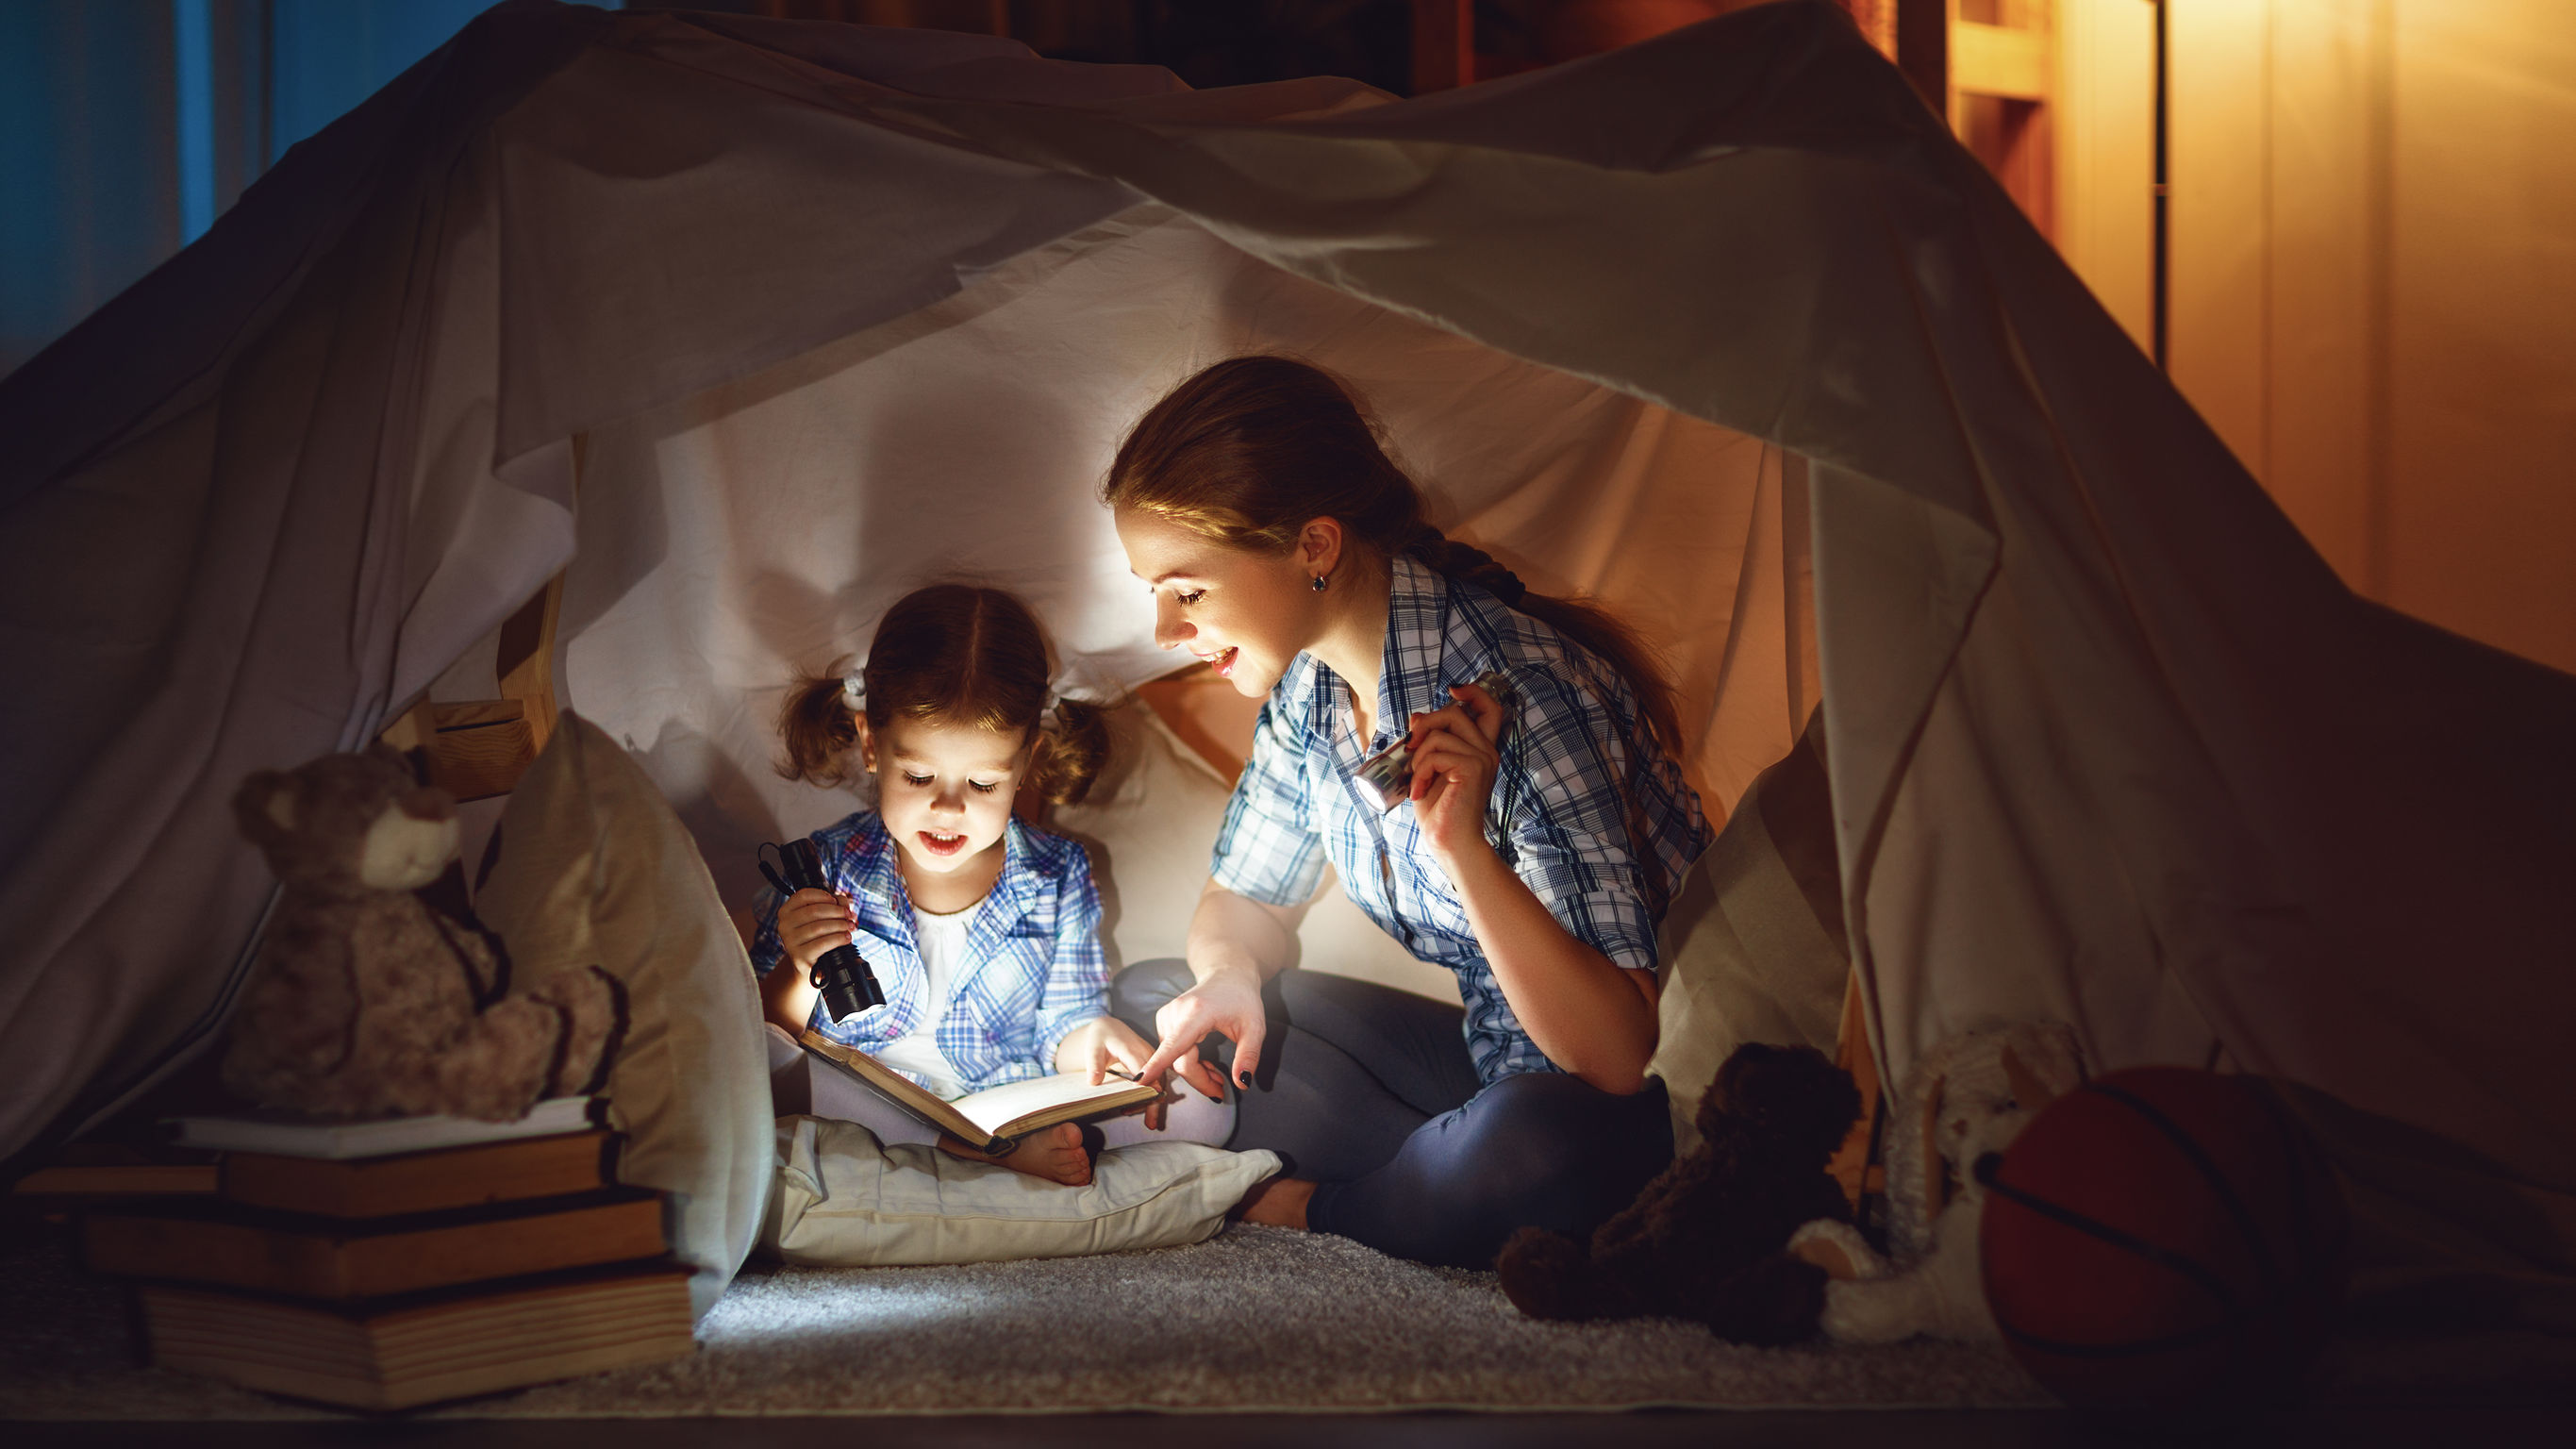 Читаем на ночь взрослым. Шалаш для детей. Домик из подушек и одеял. Чтение под одеялом с фонариком. Палатка для детей.